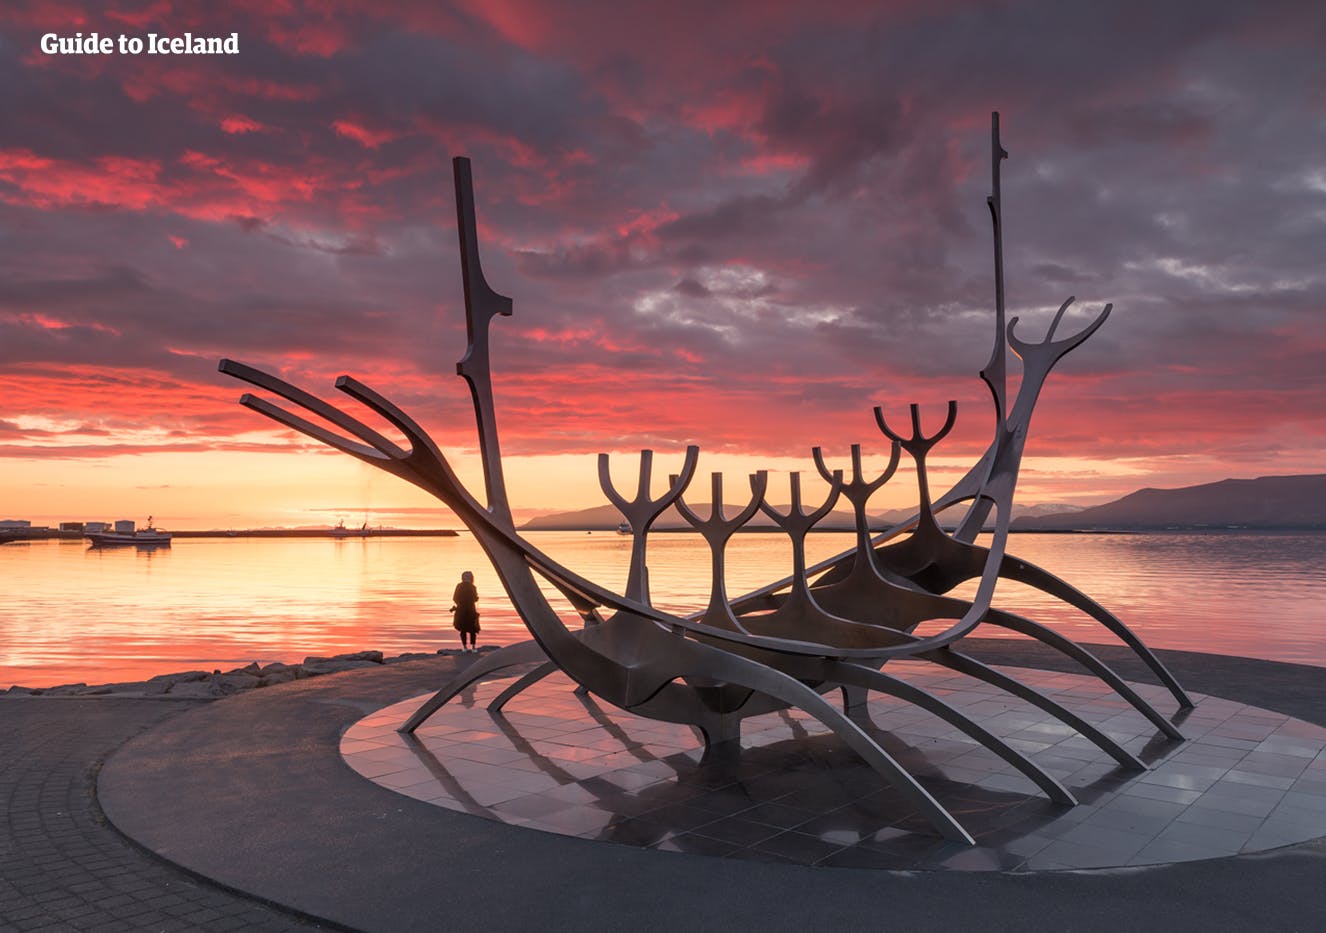 Die Skulptur ‚Sun Voyager’ steht an Reykjaviks Küste, nicht weit von der Konzerthalle Harpa entfernt.